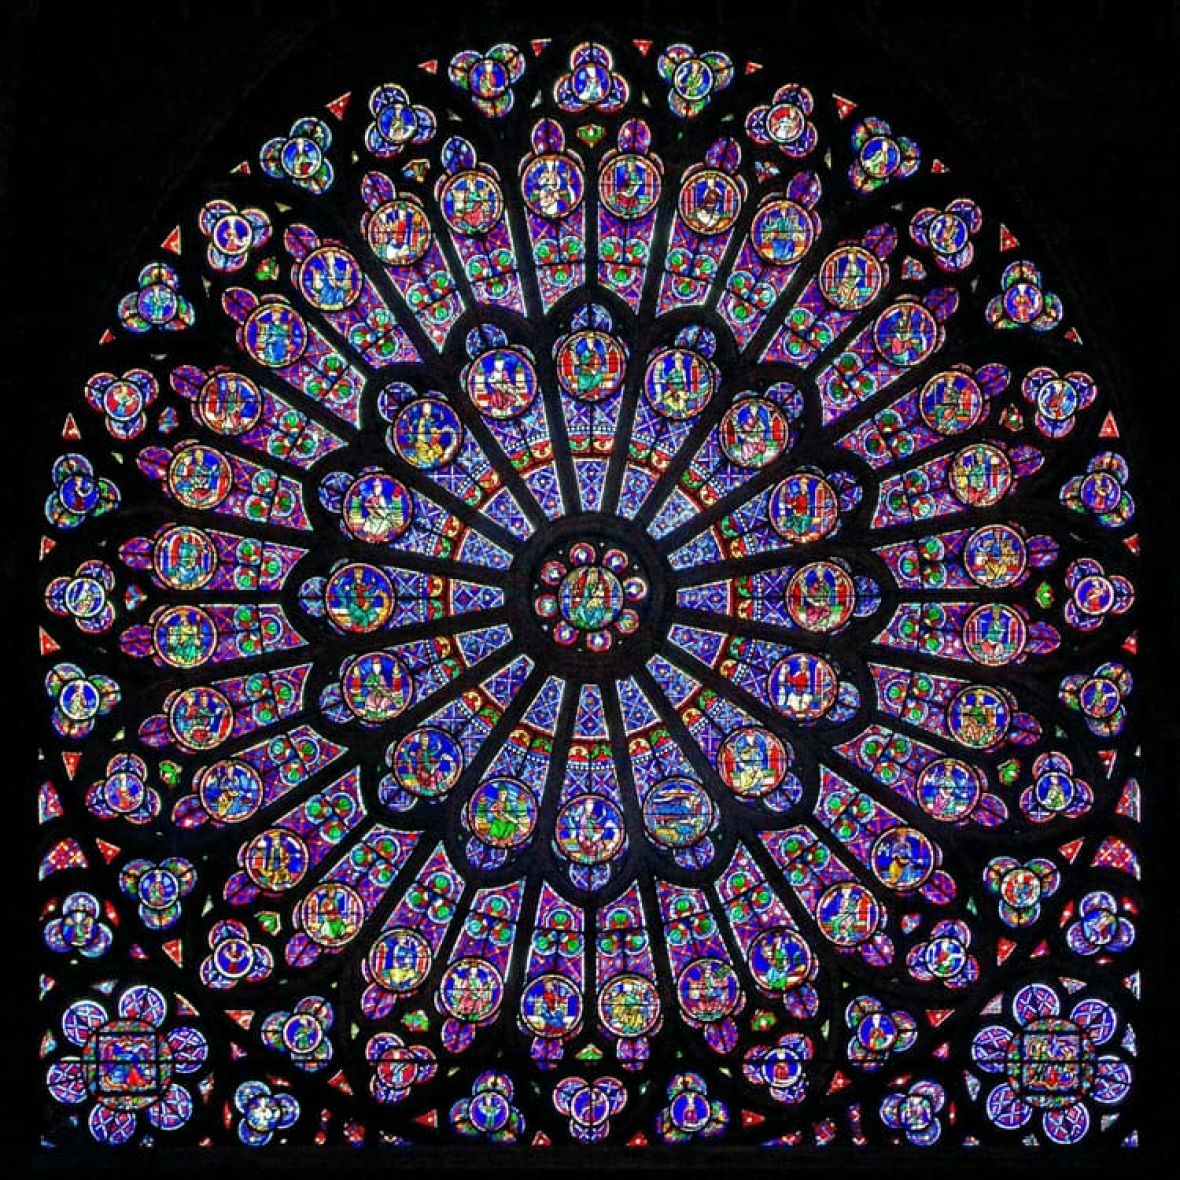 Vitraži u kadedrali Notre Dame su stari između 800 i 900 godina - undefined